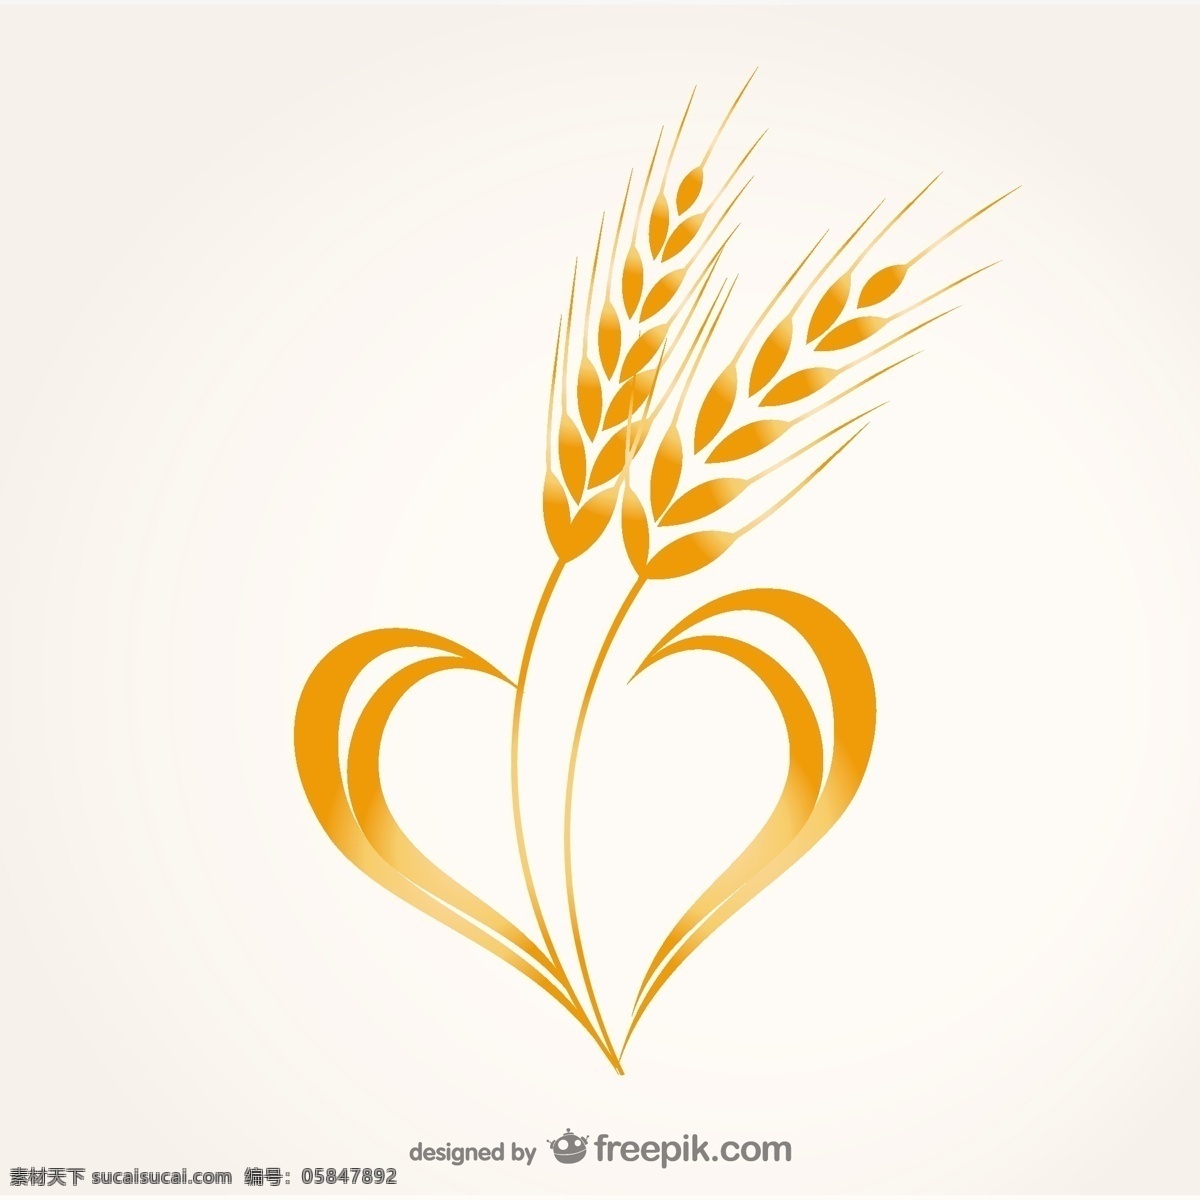 小麦心脏合成 标识 心 图标 线 小麦 流 心脏图标 材料 水平 流线 白色